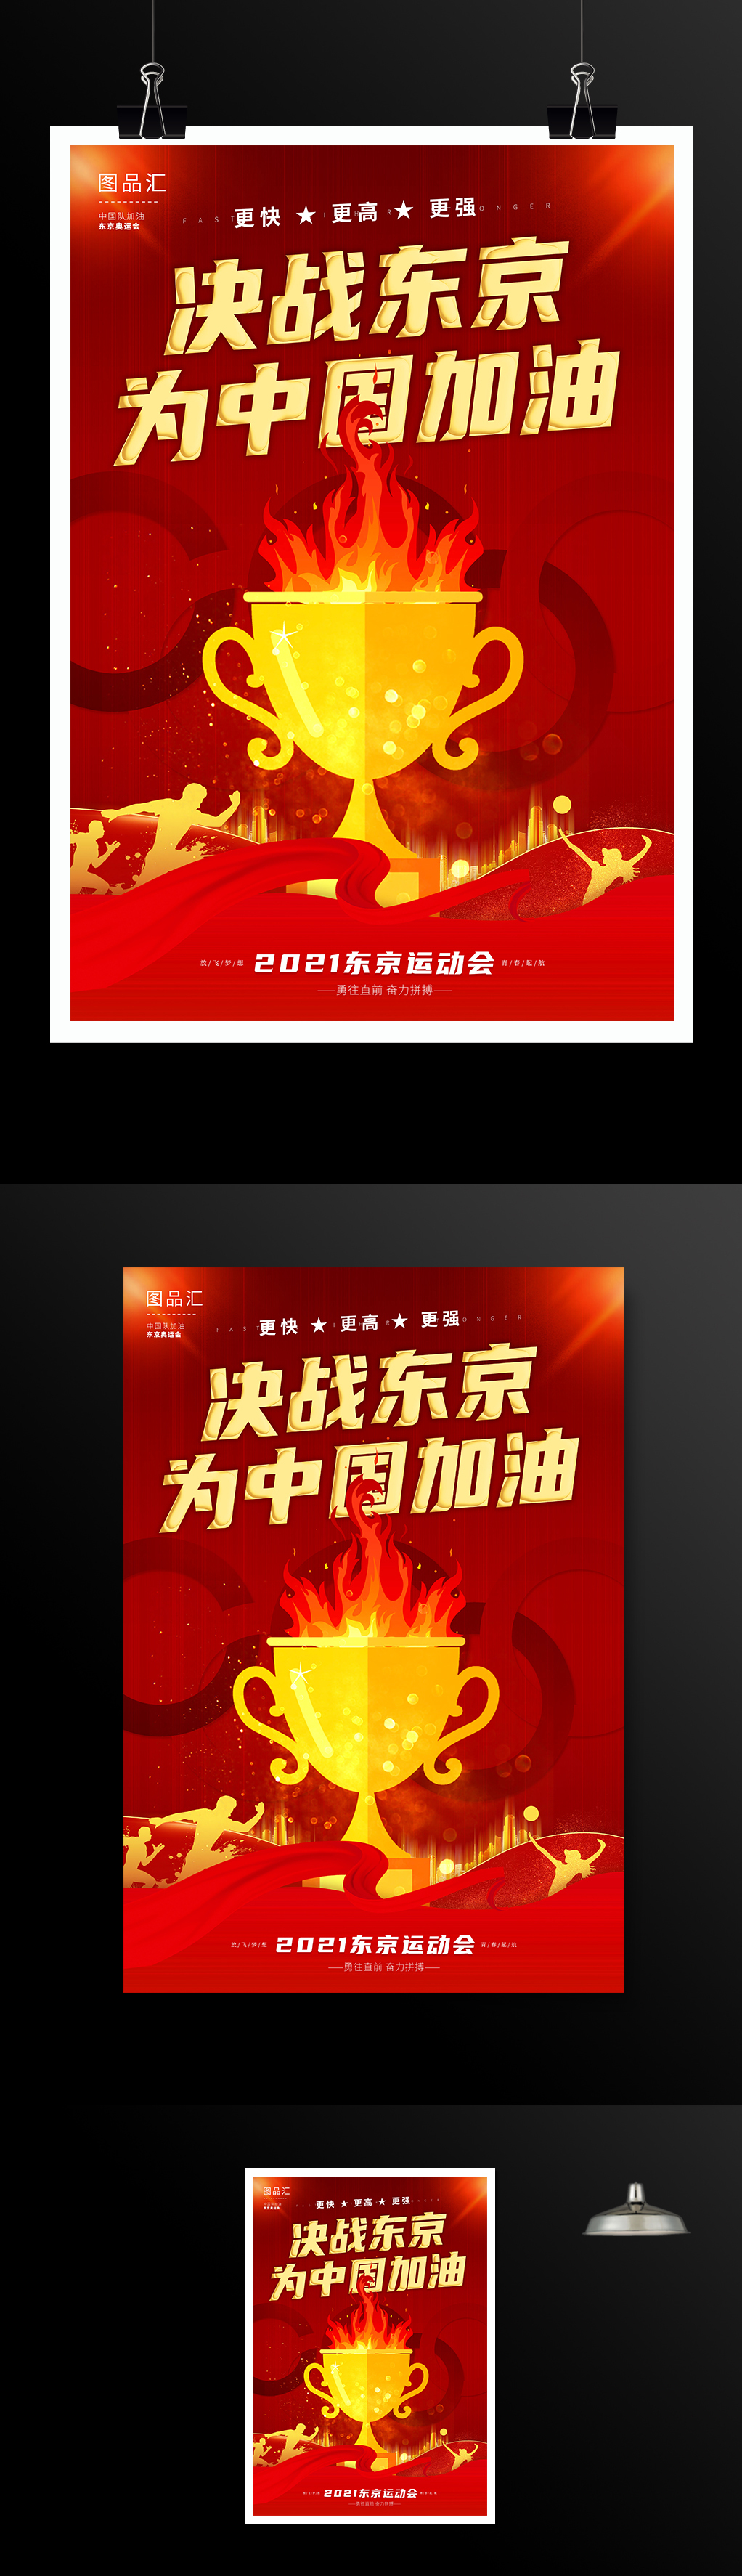 红色喜庆东京奥运会标语宣传海报